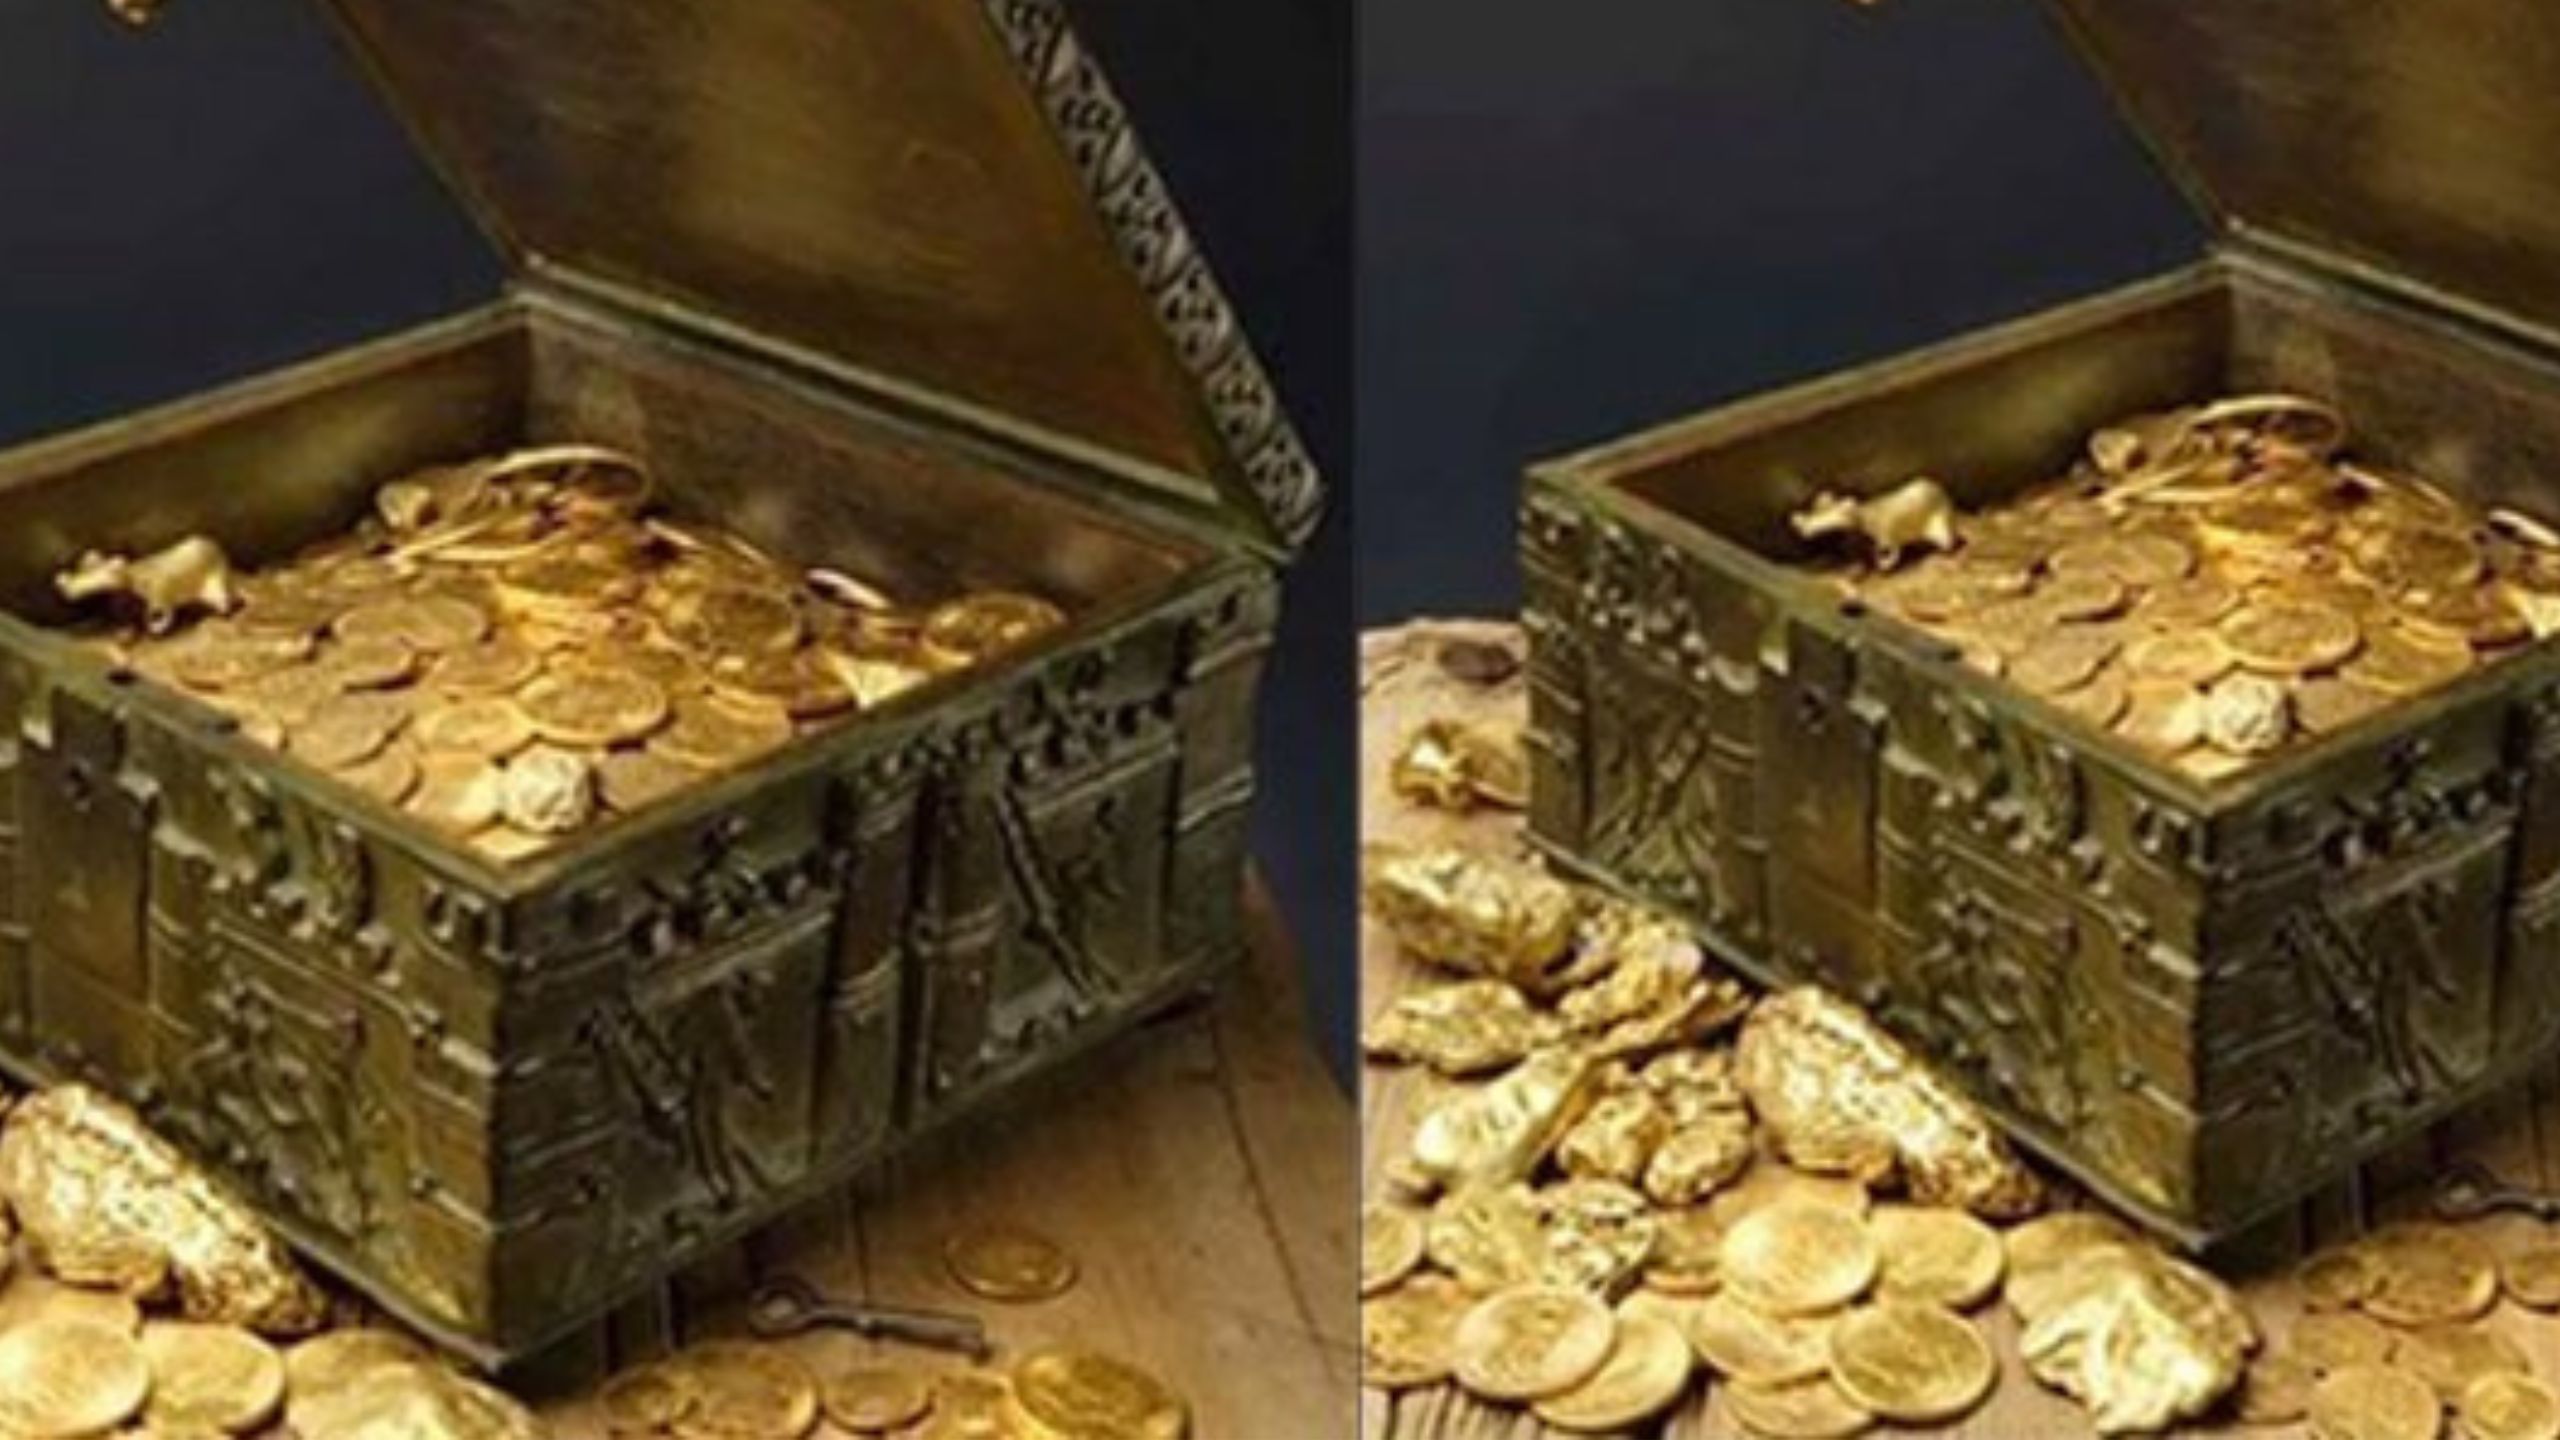 Luar Biasa, Para Peneliti Menemukan Logam Emas yang berlimpah di situs Gunung Padang, 3 Ton Logam Mulia